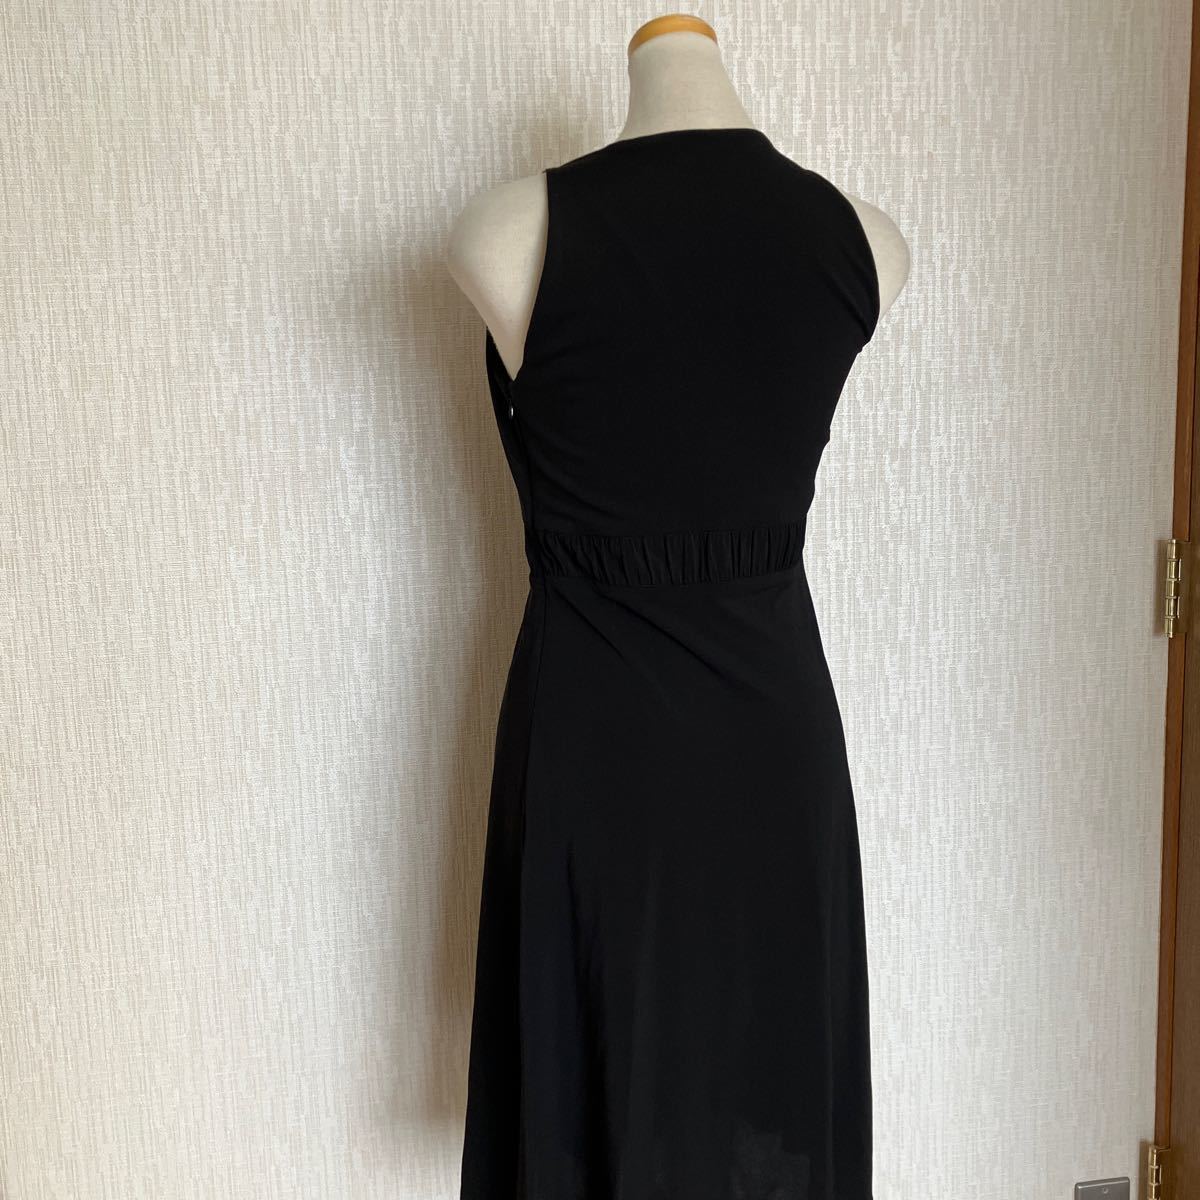  paul (pole) kaPAULE KA# вечернее платье джерси - One-piece чёрный черный #38# золотая цепь ремень дизайн # Франция высококлассный бренд #